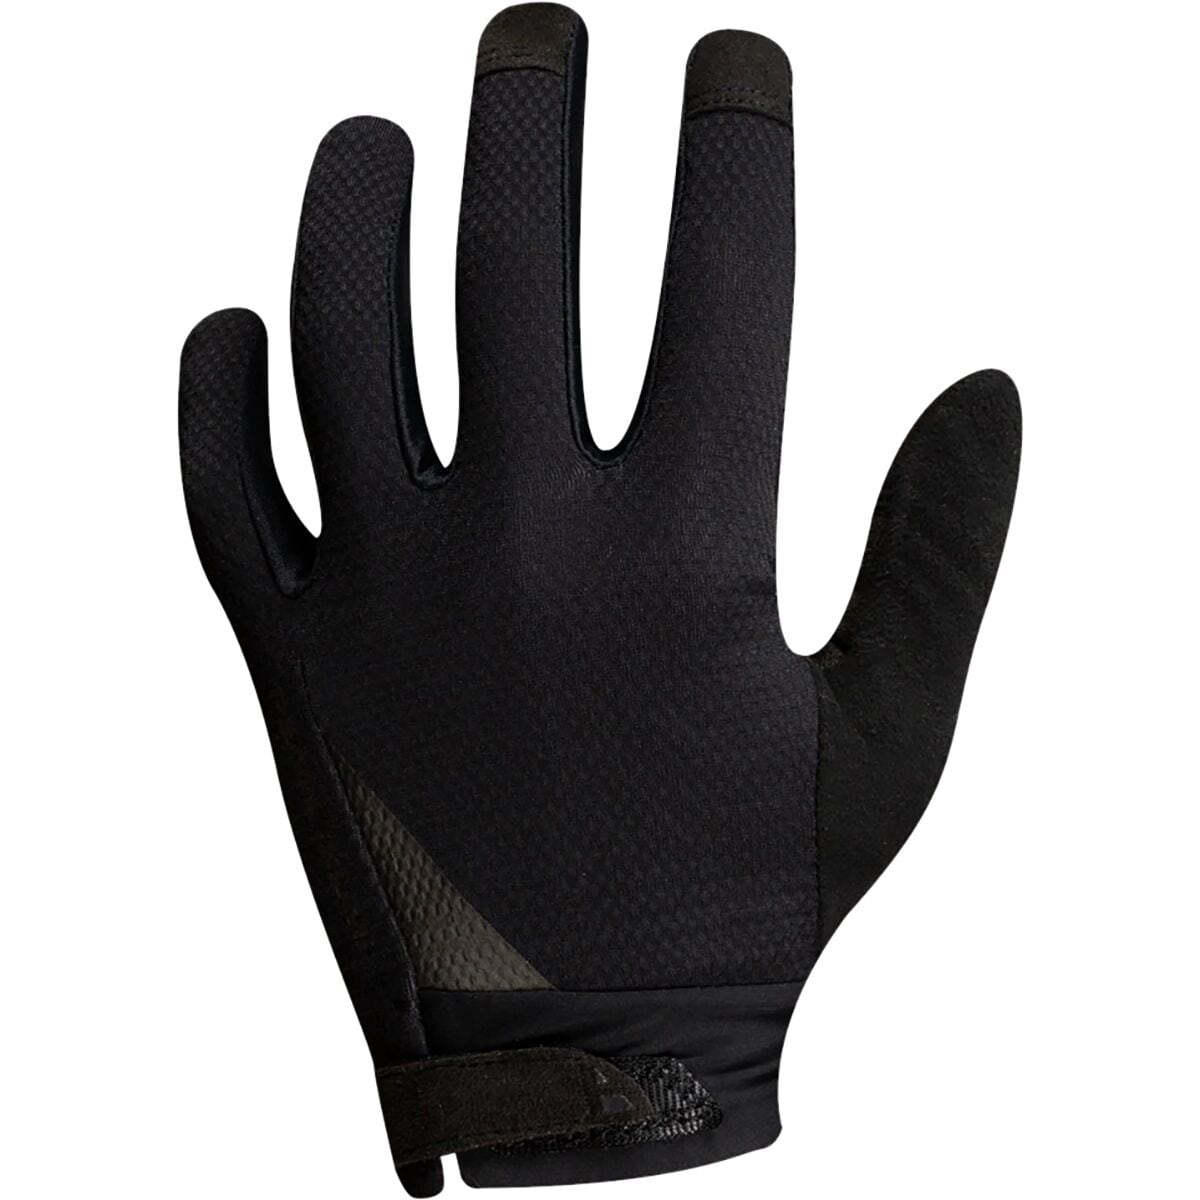 PEARL iZUMi ELITE Gel Full-Finger Glove - Men's